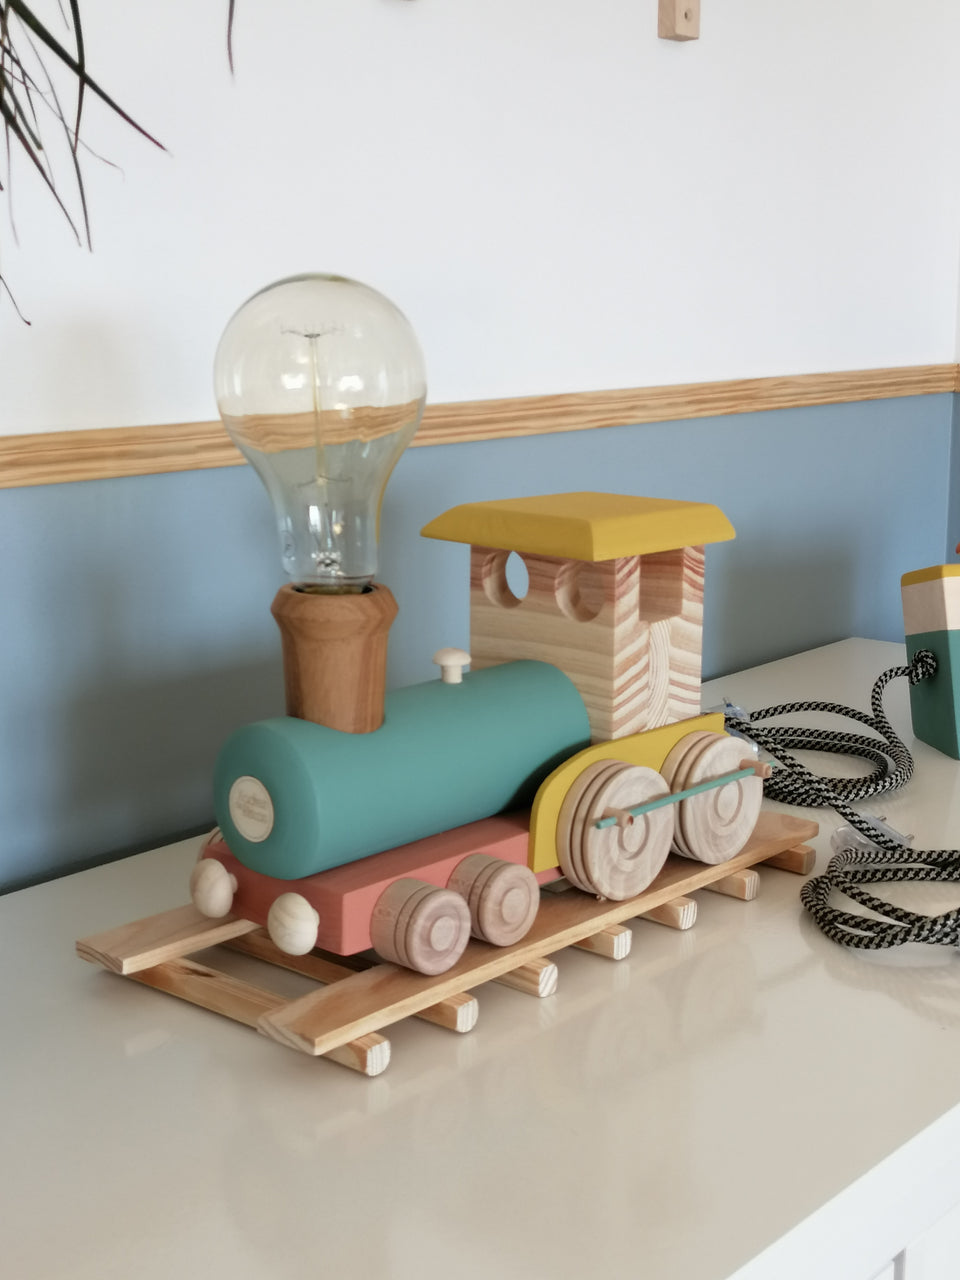 Candeeiro Comboio de mesa  Terracota - Terracotta Train table lamp